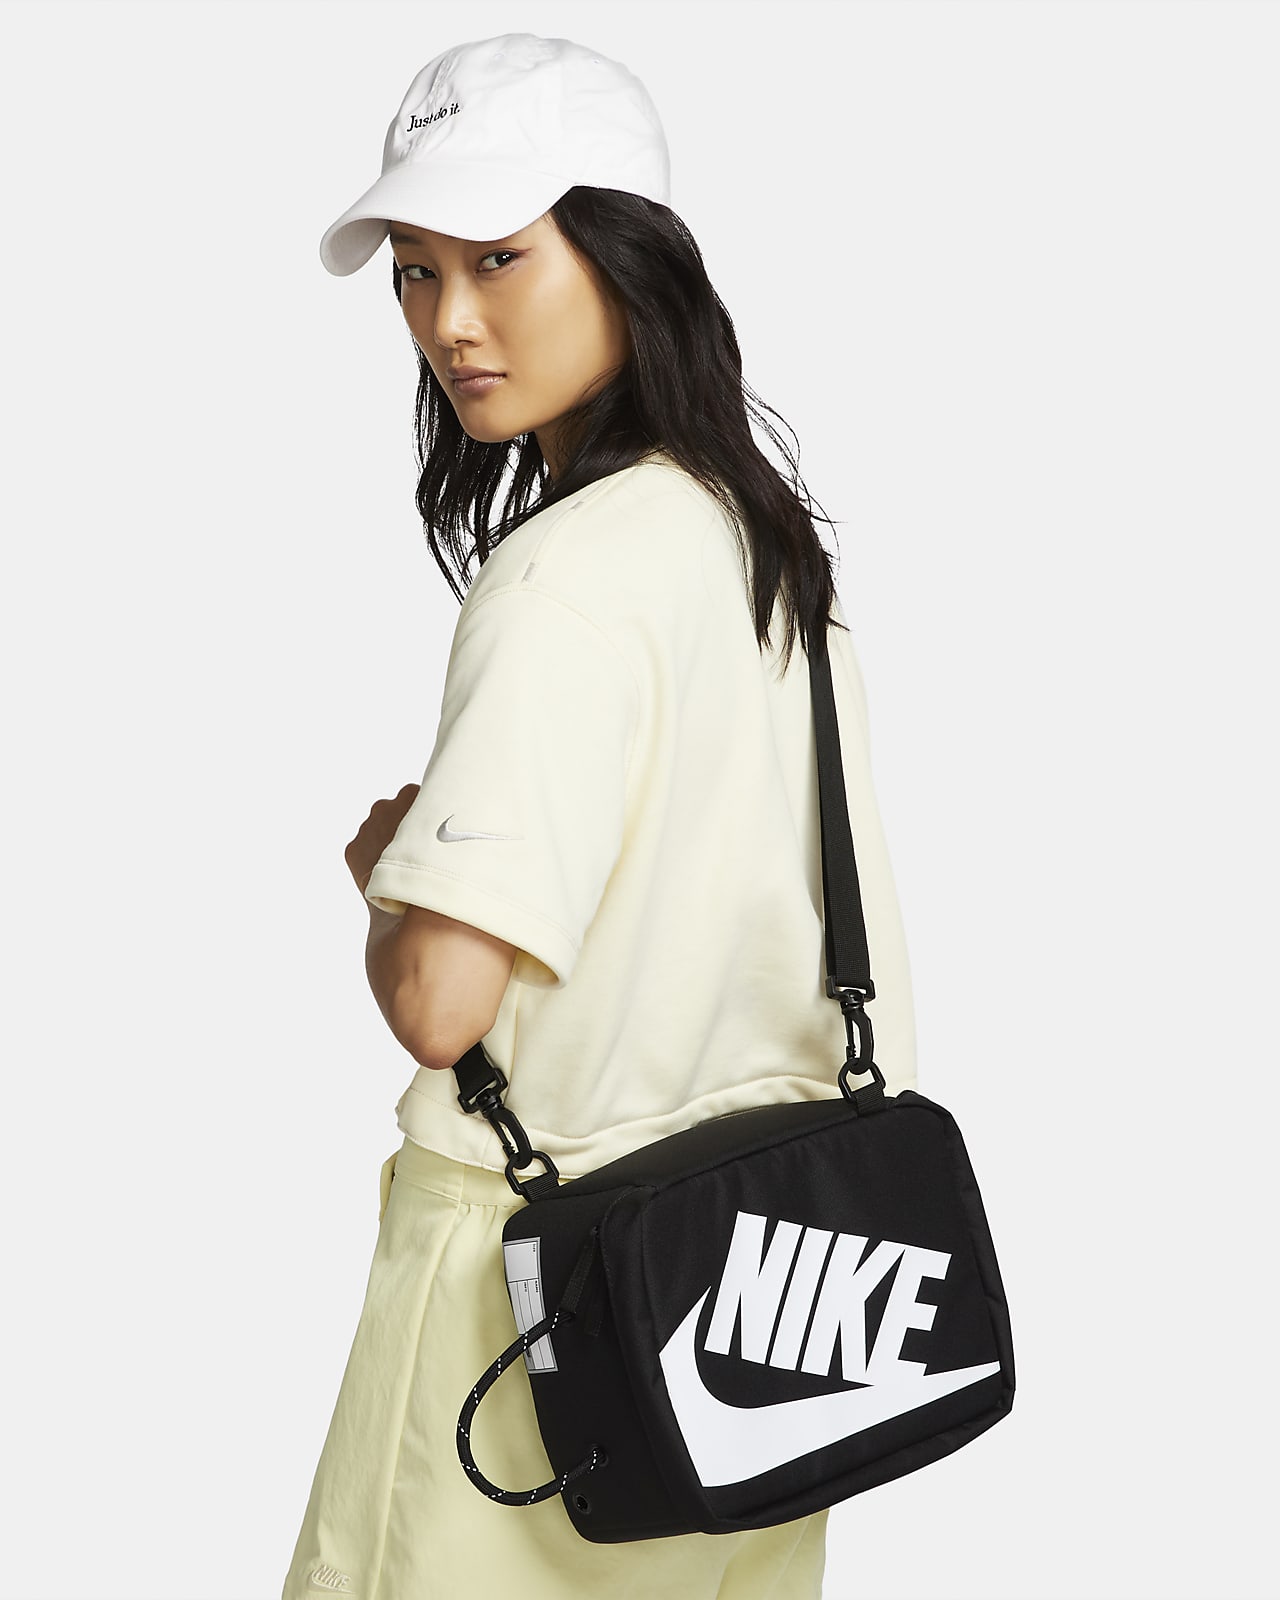 Ultieme sensatie vasthoudend Nike Shoe Box Bag (Small, 8L). Nike ID